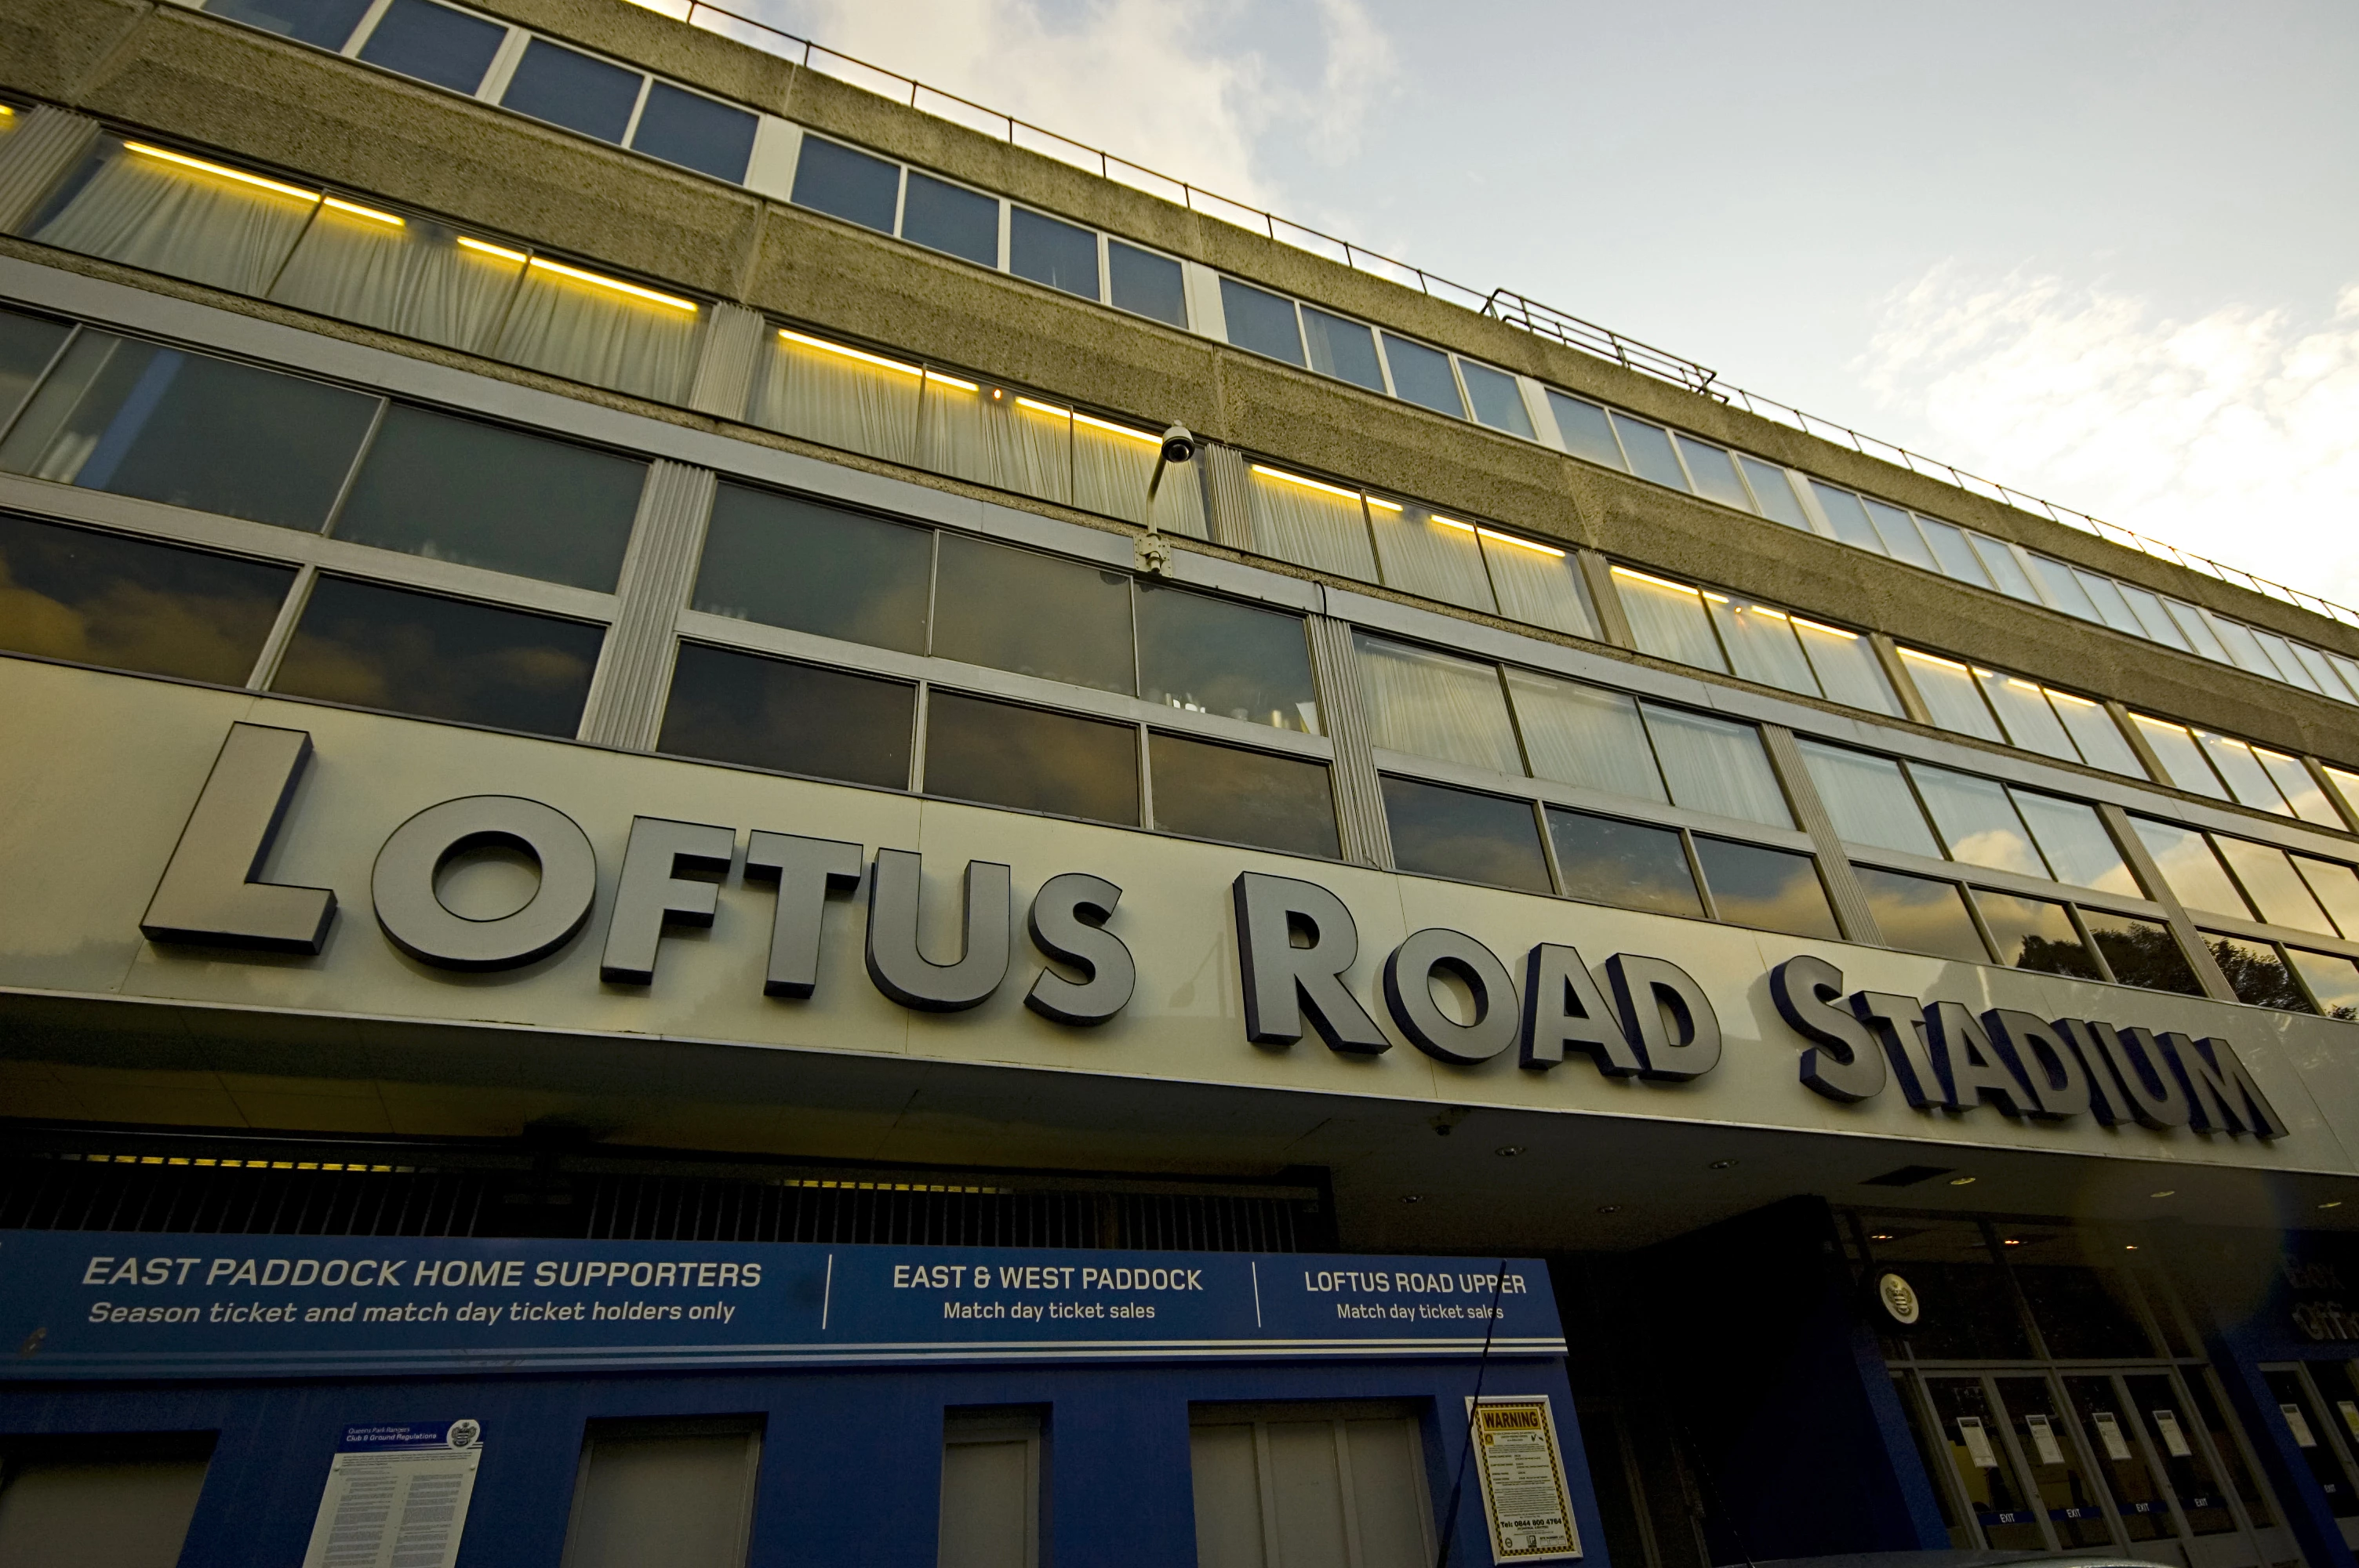 Loftus Road, the home of QPR.